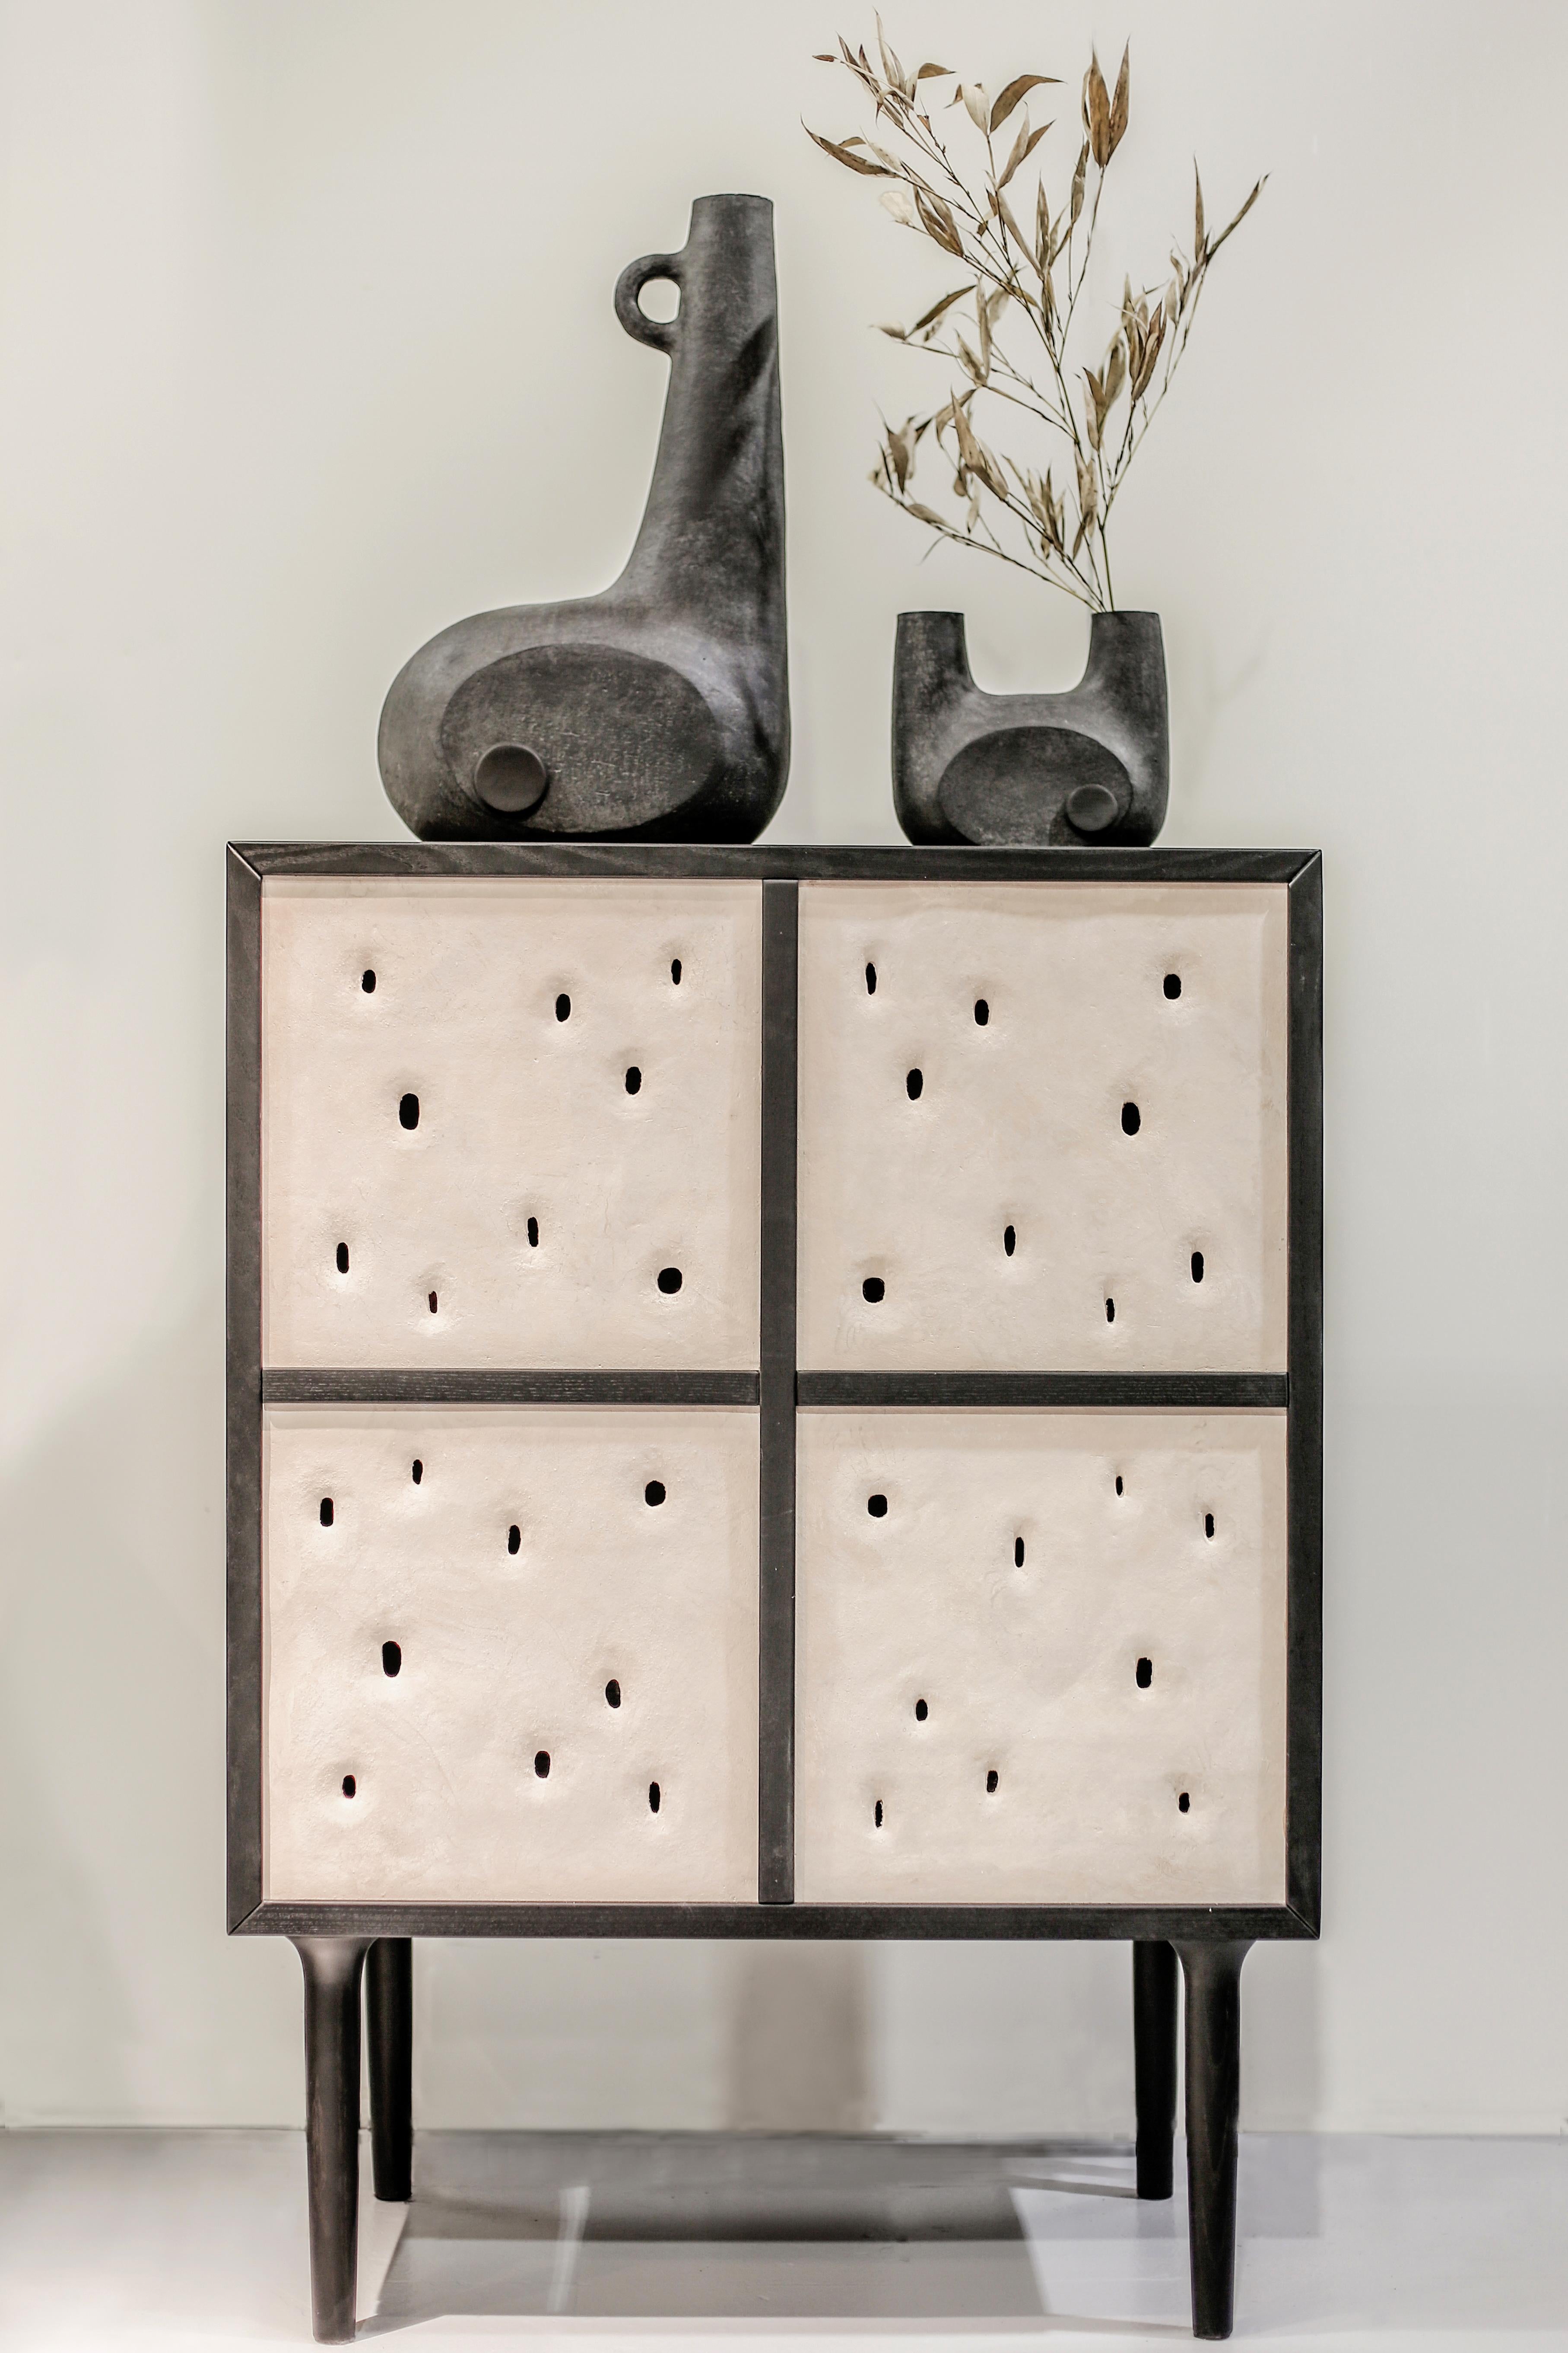 Ukrainian Set of 2 Ceramic Contemporary Cabinets by Faina